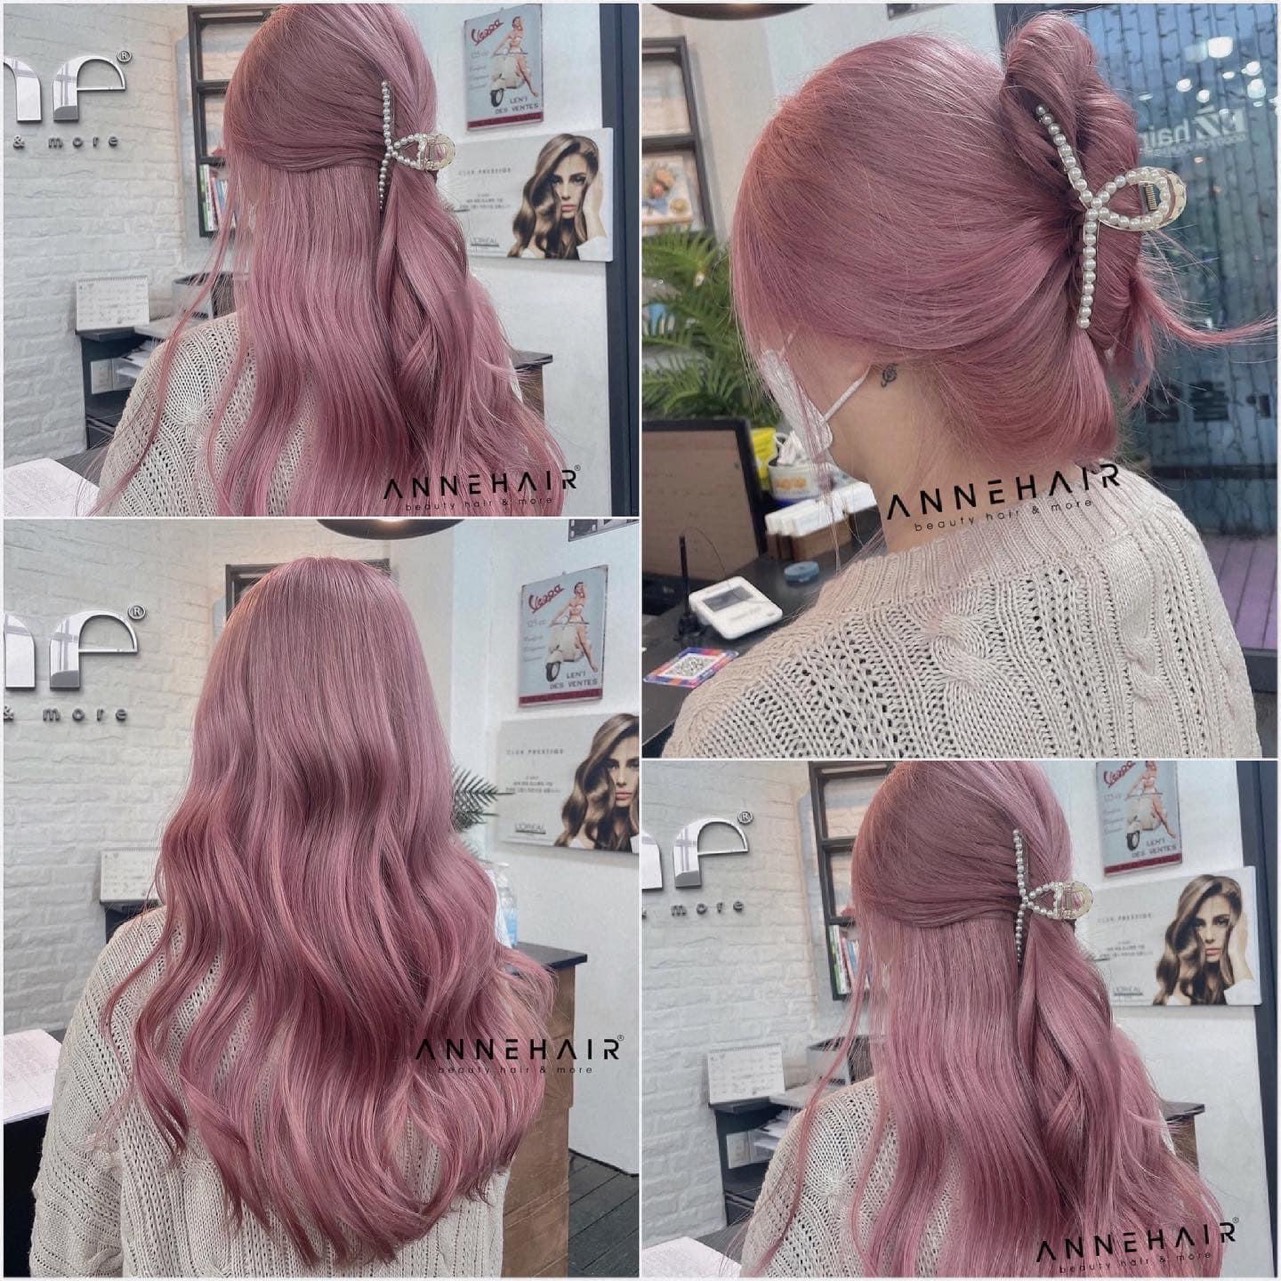 Tóc màu xám hồng chính là sự kết hợp hoàn hảo giữa sắc hồng tím và tóc màu xám. Đây là một trong những phong cách tóc nổi tiếng và được yêu thích nhất hiện nay. Hãy tìm hiểu ngay hình ảnh liên quan để biết thêm chi tiết về cách mix và tạo kiểu tóc màu xám hồng đầy tinh tế và nữ tính này nhé!